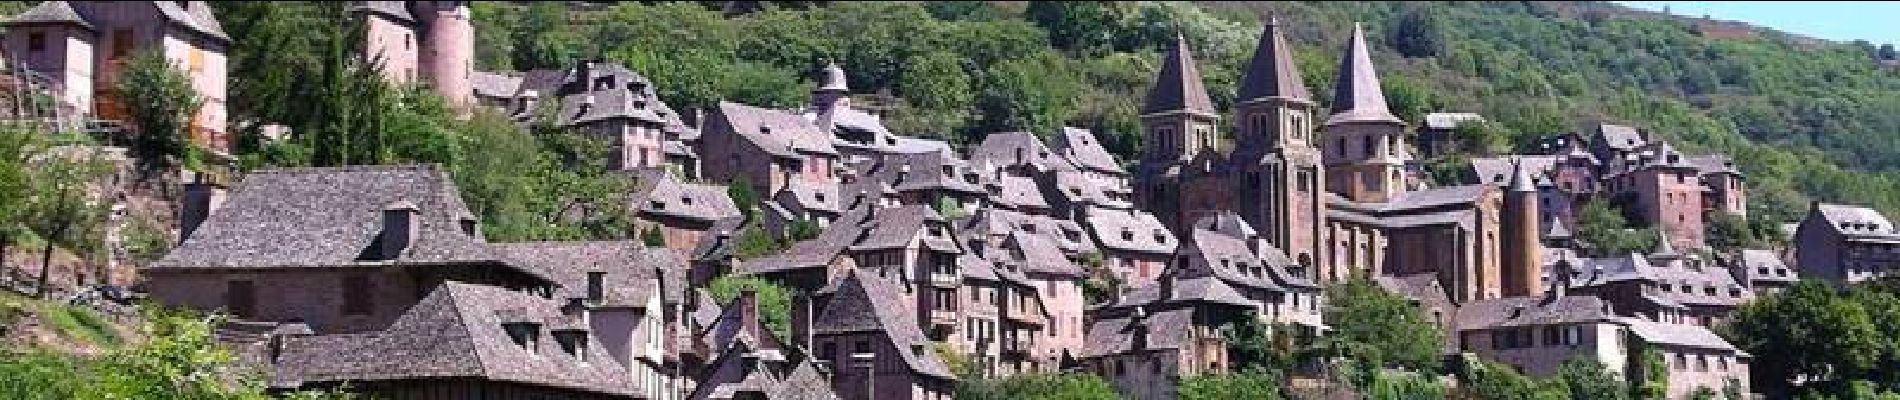 Tour Fahrrad Capdenac-Gare - Circuit des 10 plus beaux villages de France de l'Aveyron - Capdenac - Entragues sur Truyère - Photo